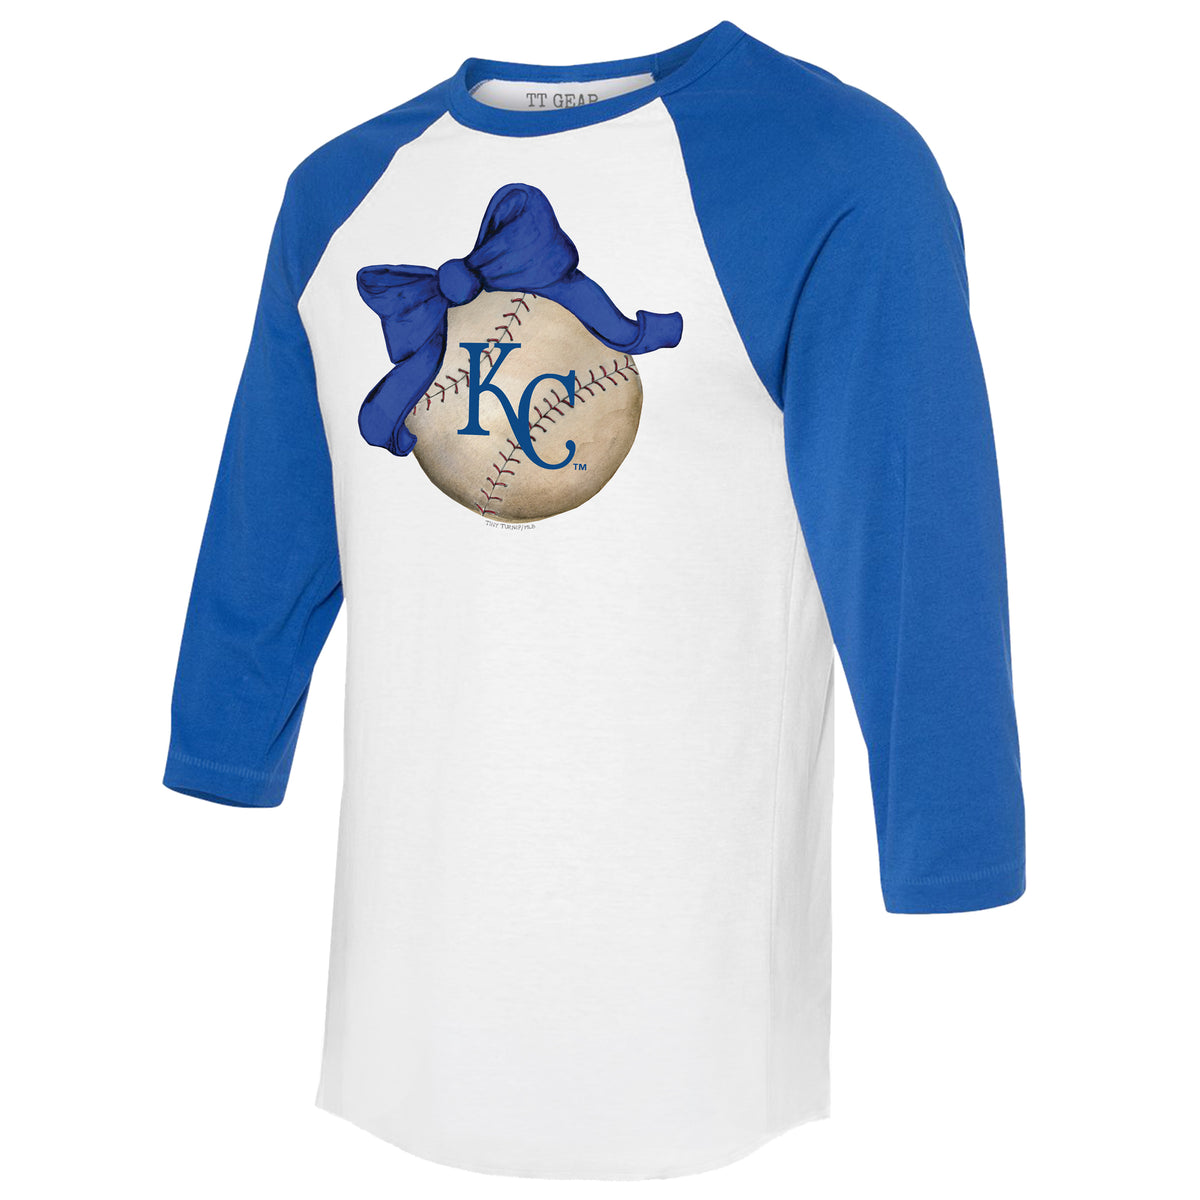 Kansas City Royals Baseball Bow 3/4 Royal Blue Sleeve Raglan